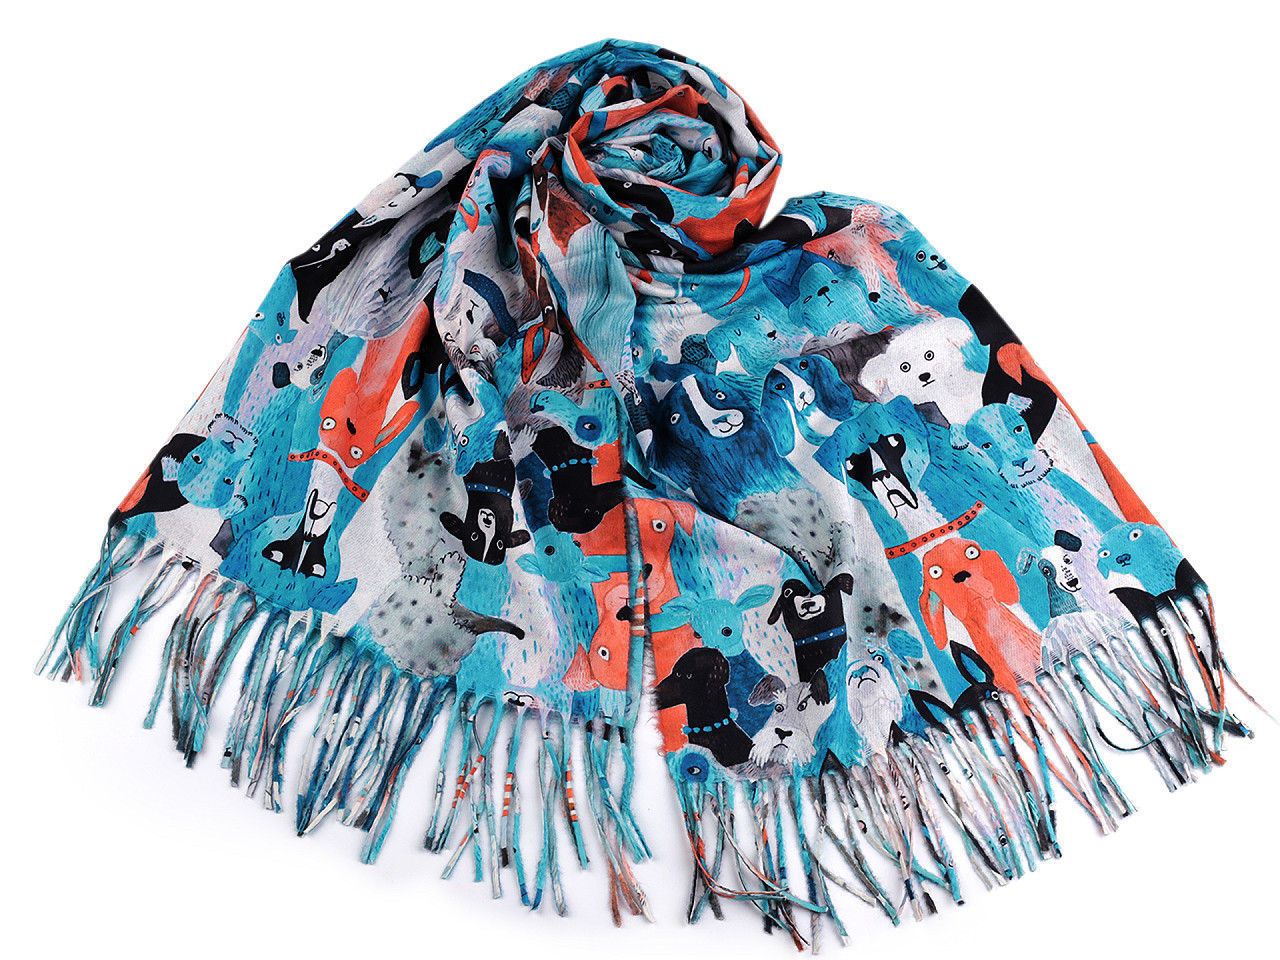 Šátek / šála typu kašmír s třásněmi, psi 70x180 cm, barva 6 modrá světlá